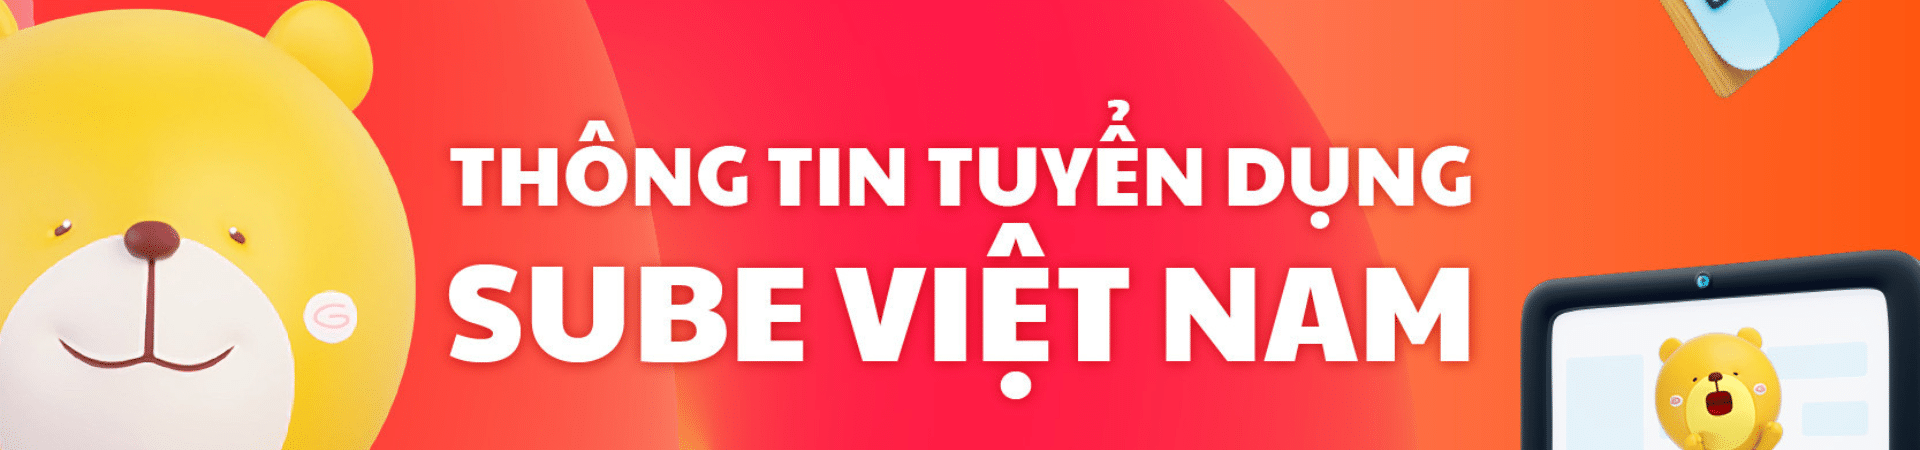 CTV CONTENT MEDIA (PART-TIME) - Bear Việt Nam - Đồ gia dụng, mẹ và bé Bear chính hãng.